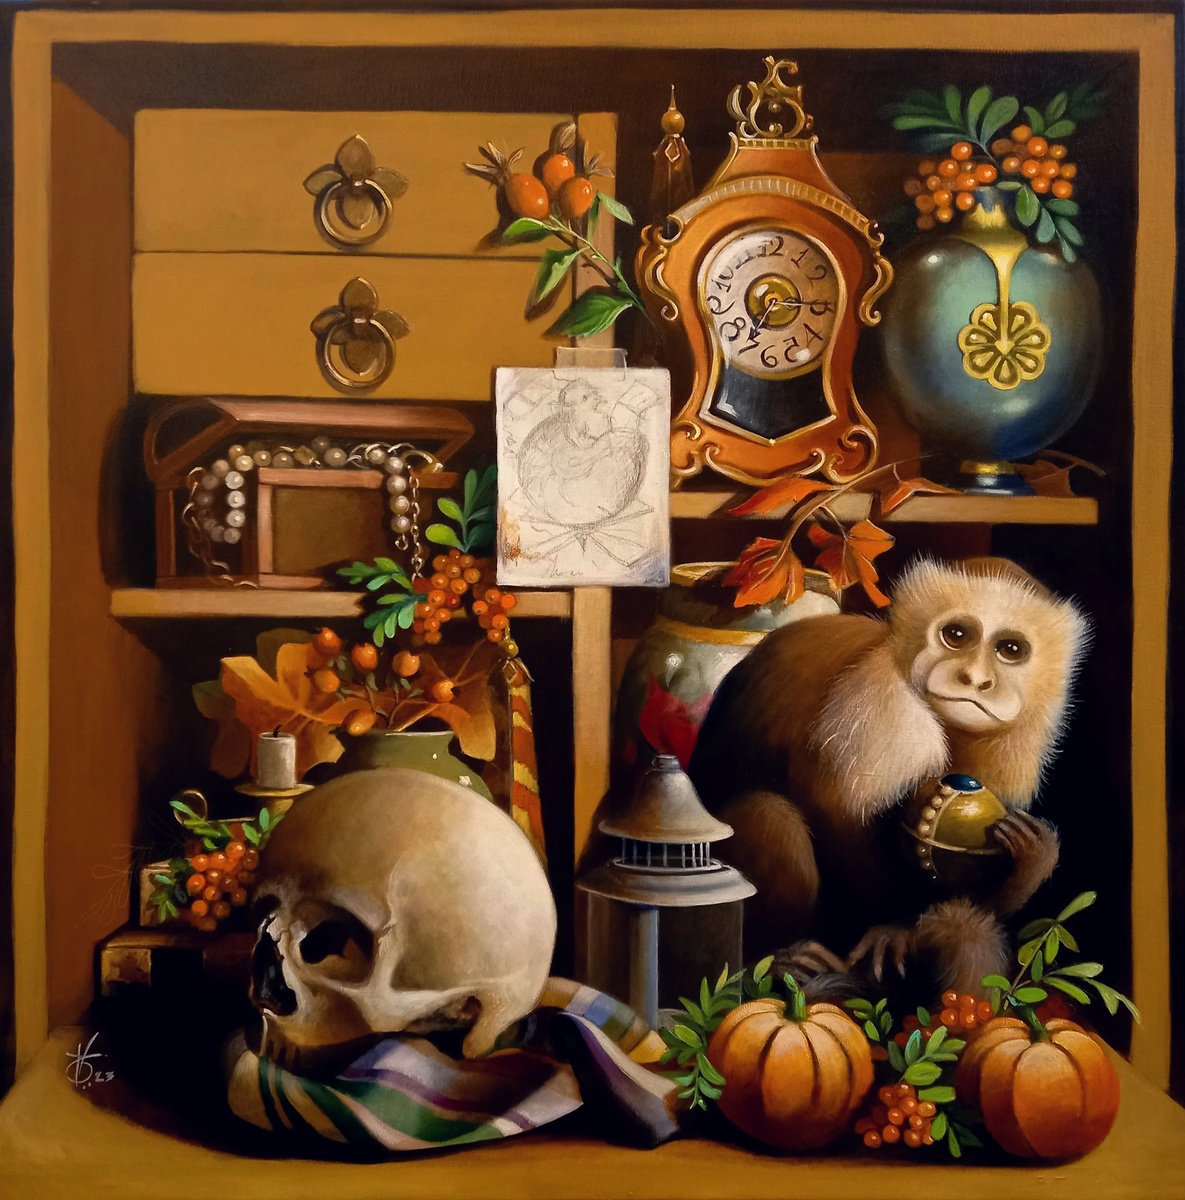 Autumn cabinet by Valentina Toma’ aka Zoe Chigi